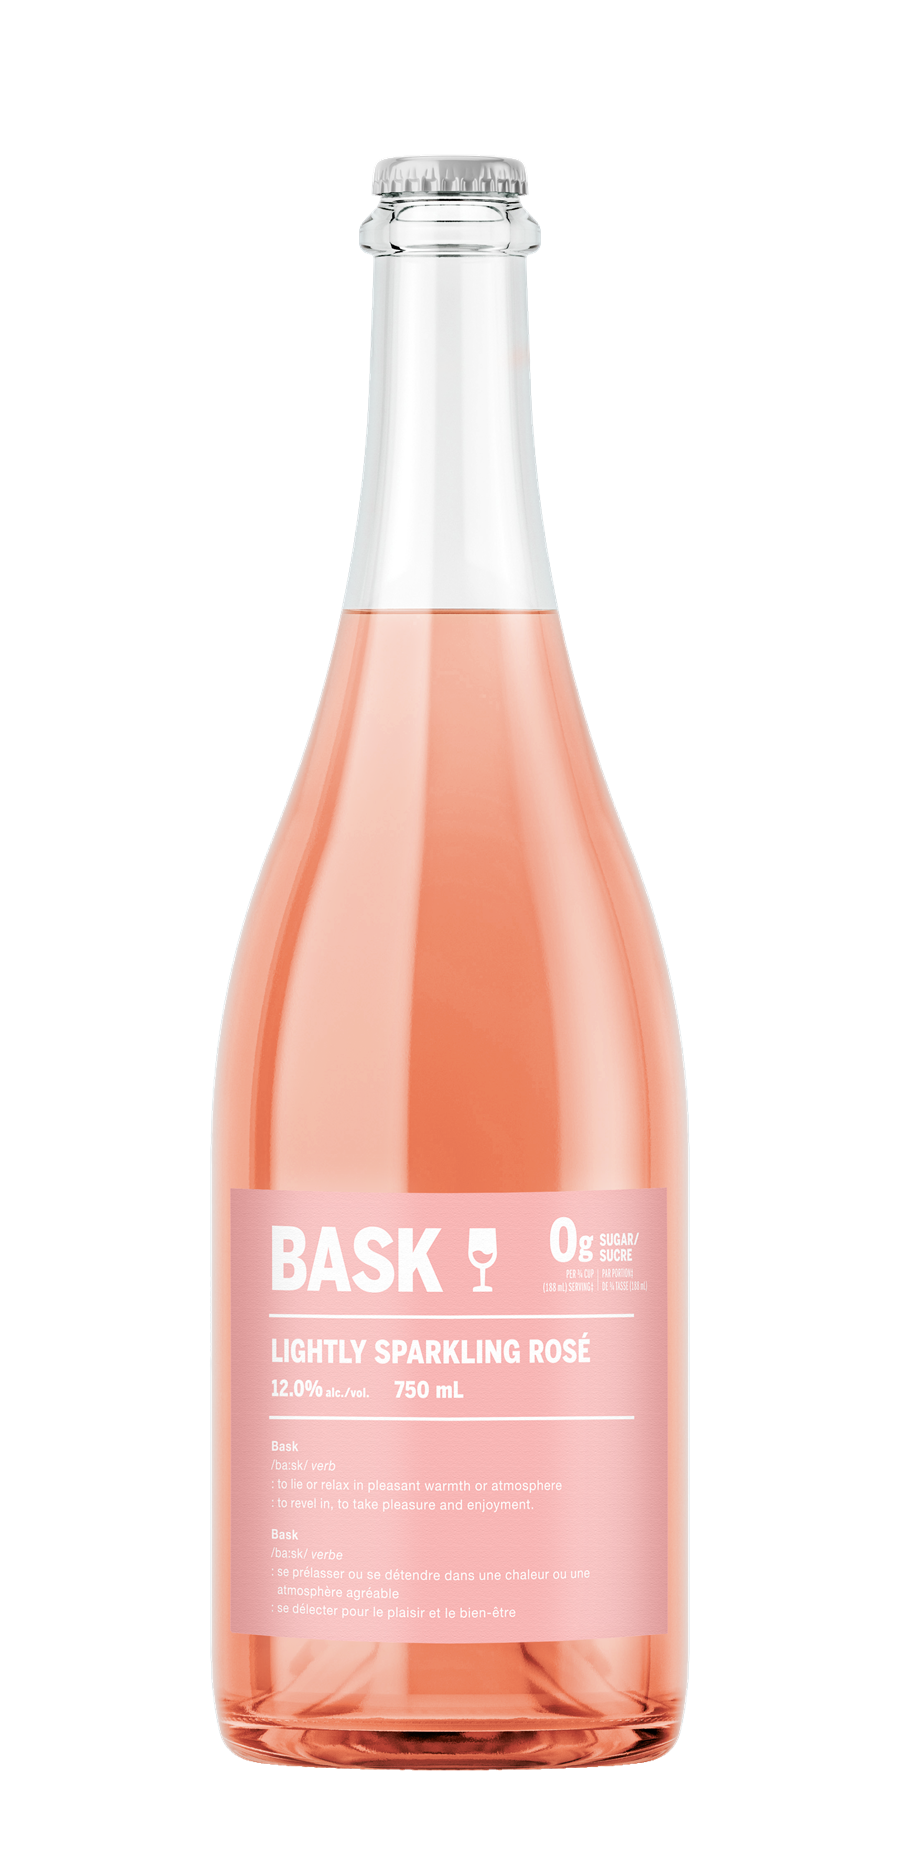 Bask Lightly Sparkling Rosé 80093814 Bask Wine